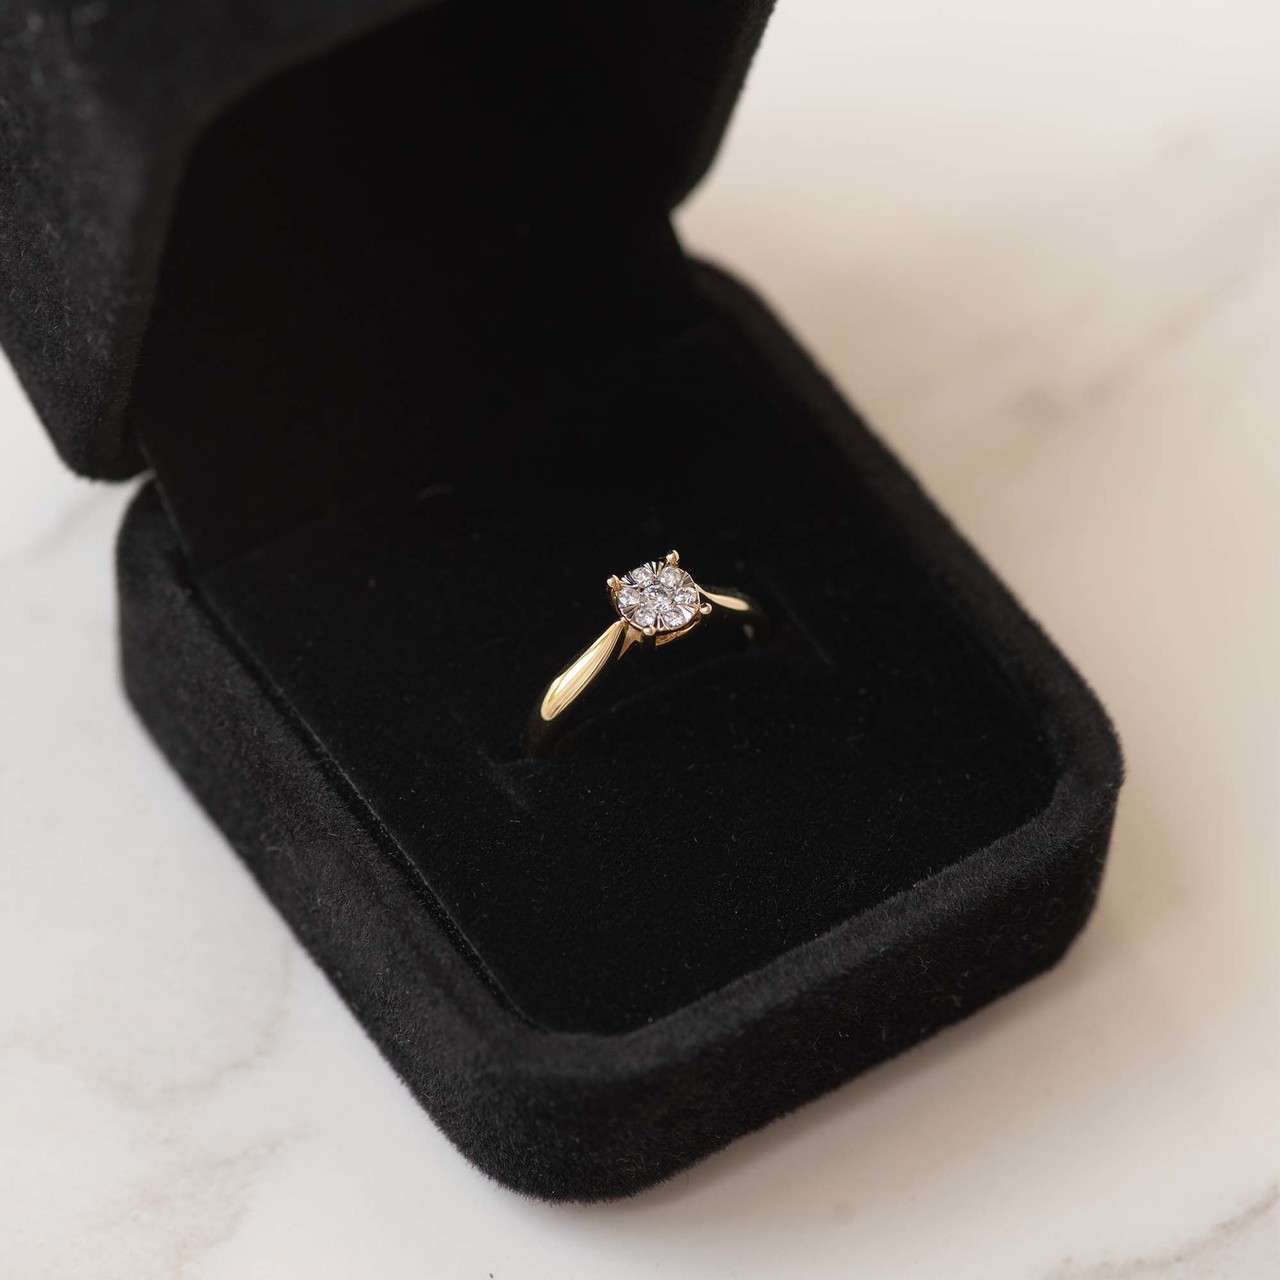 Isabel Bernard - 14 karat gold ring, diamond 0.08 ct